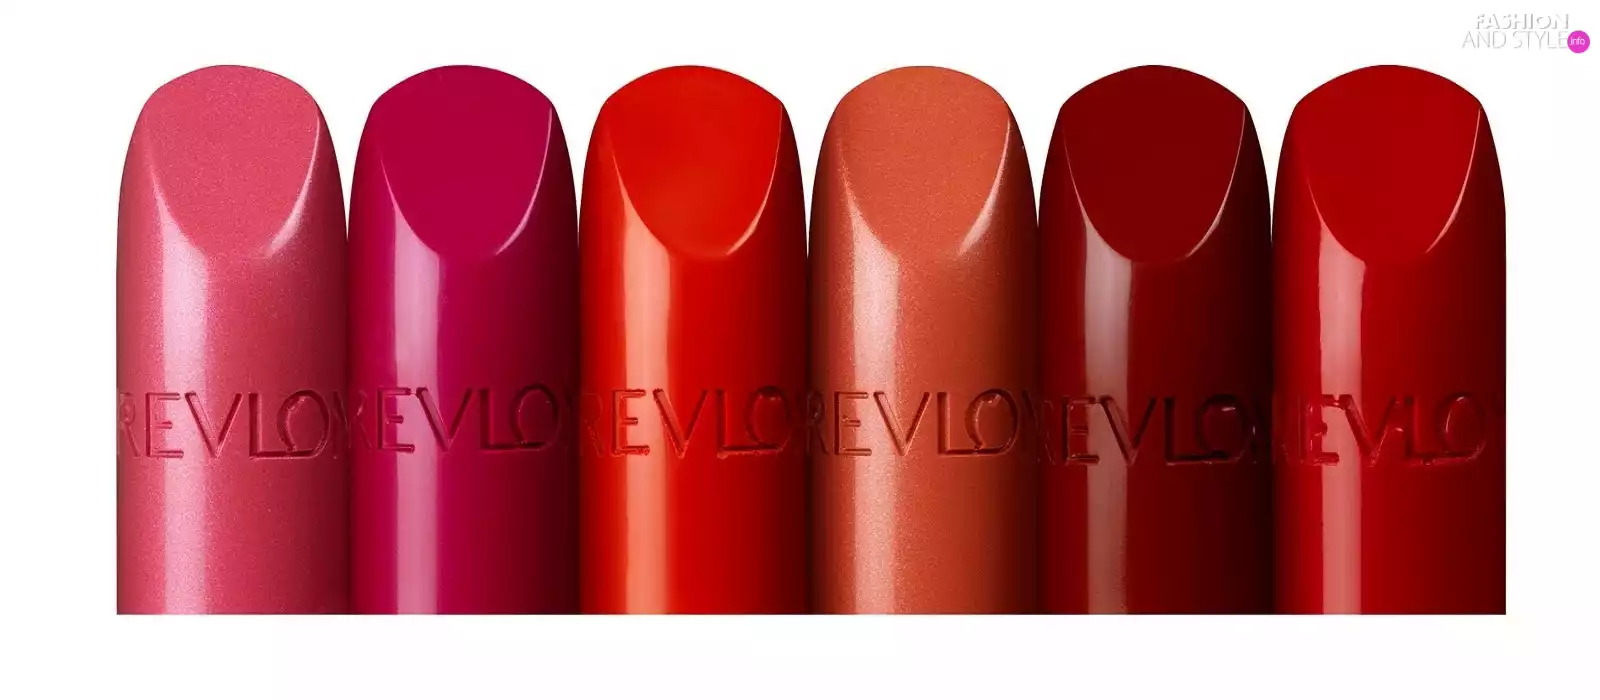 Revlon, colors, lipstick